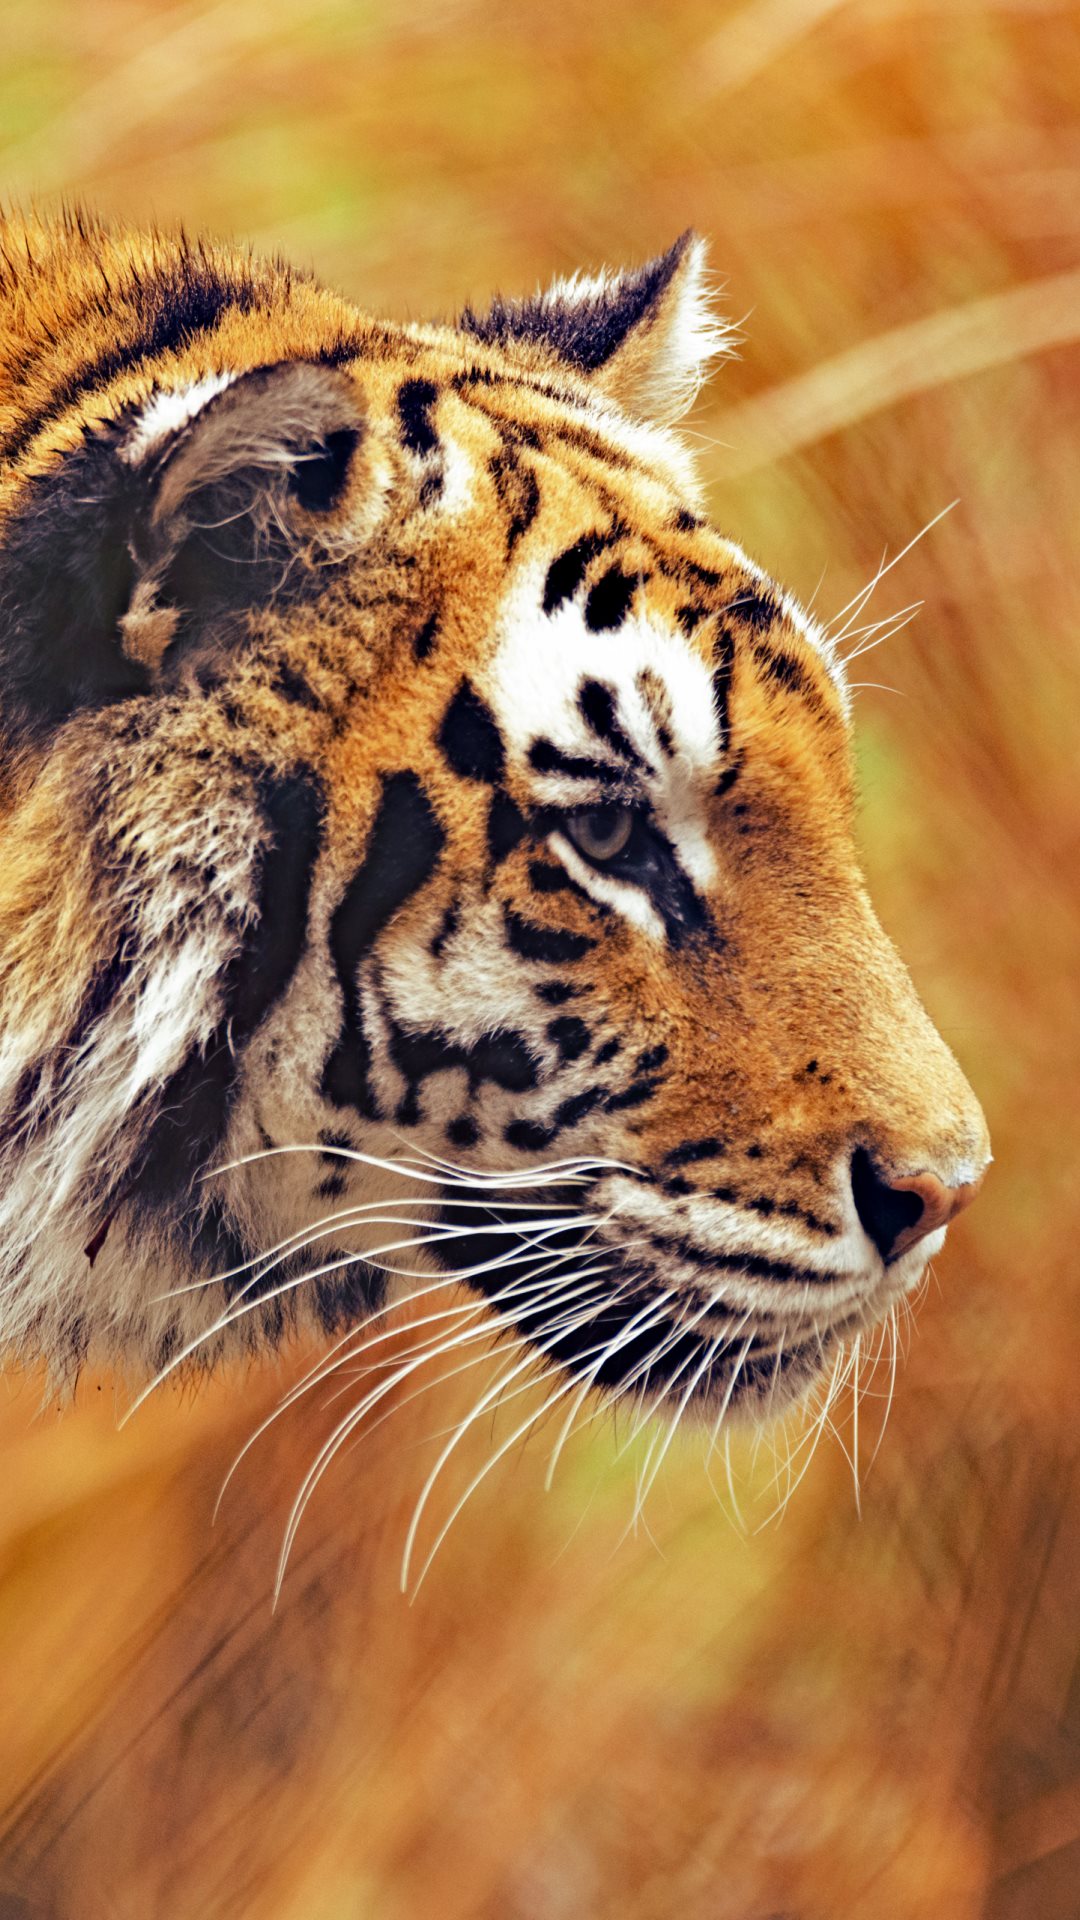 fonds d'écran ultra hd pour mobile,animal terrestre,faune,tigre,tigre du bengale,moustaches